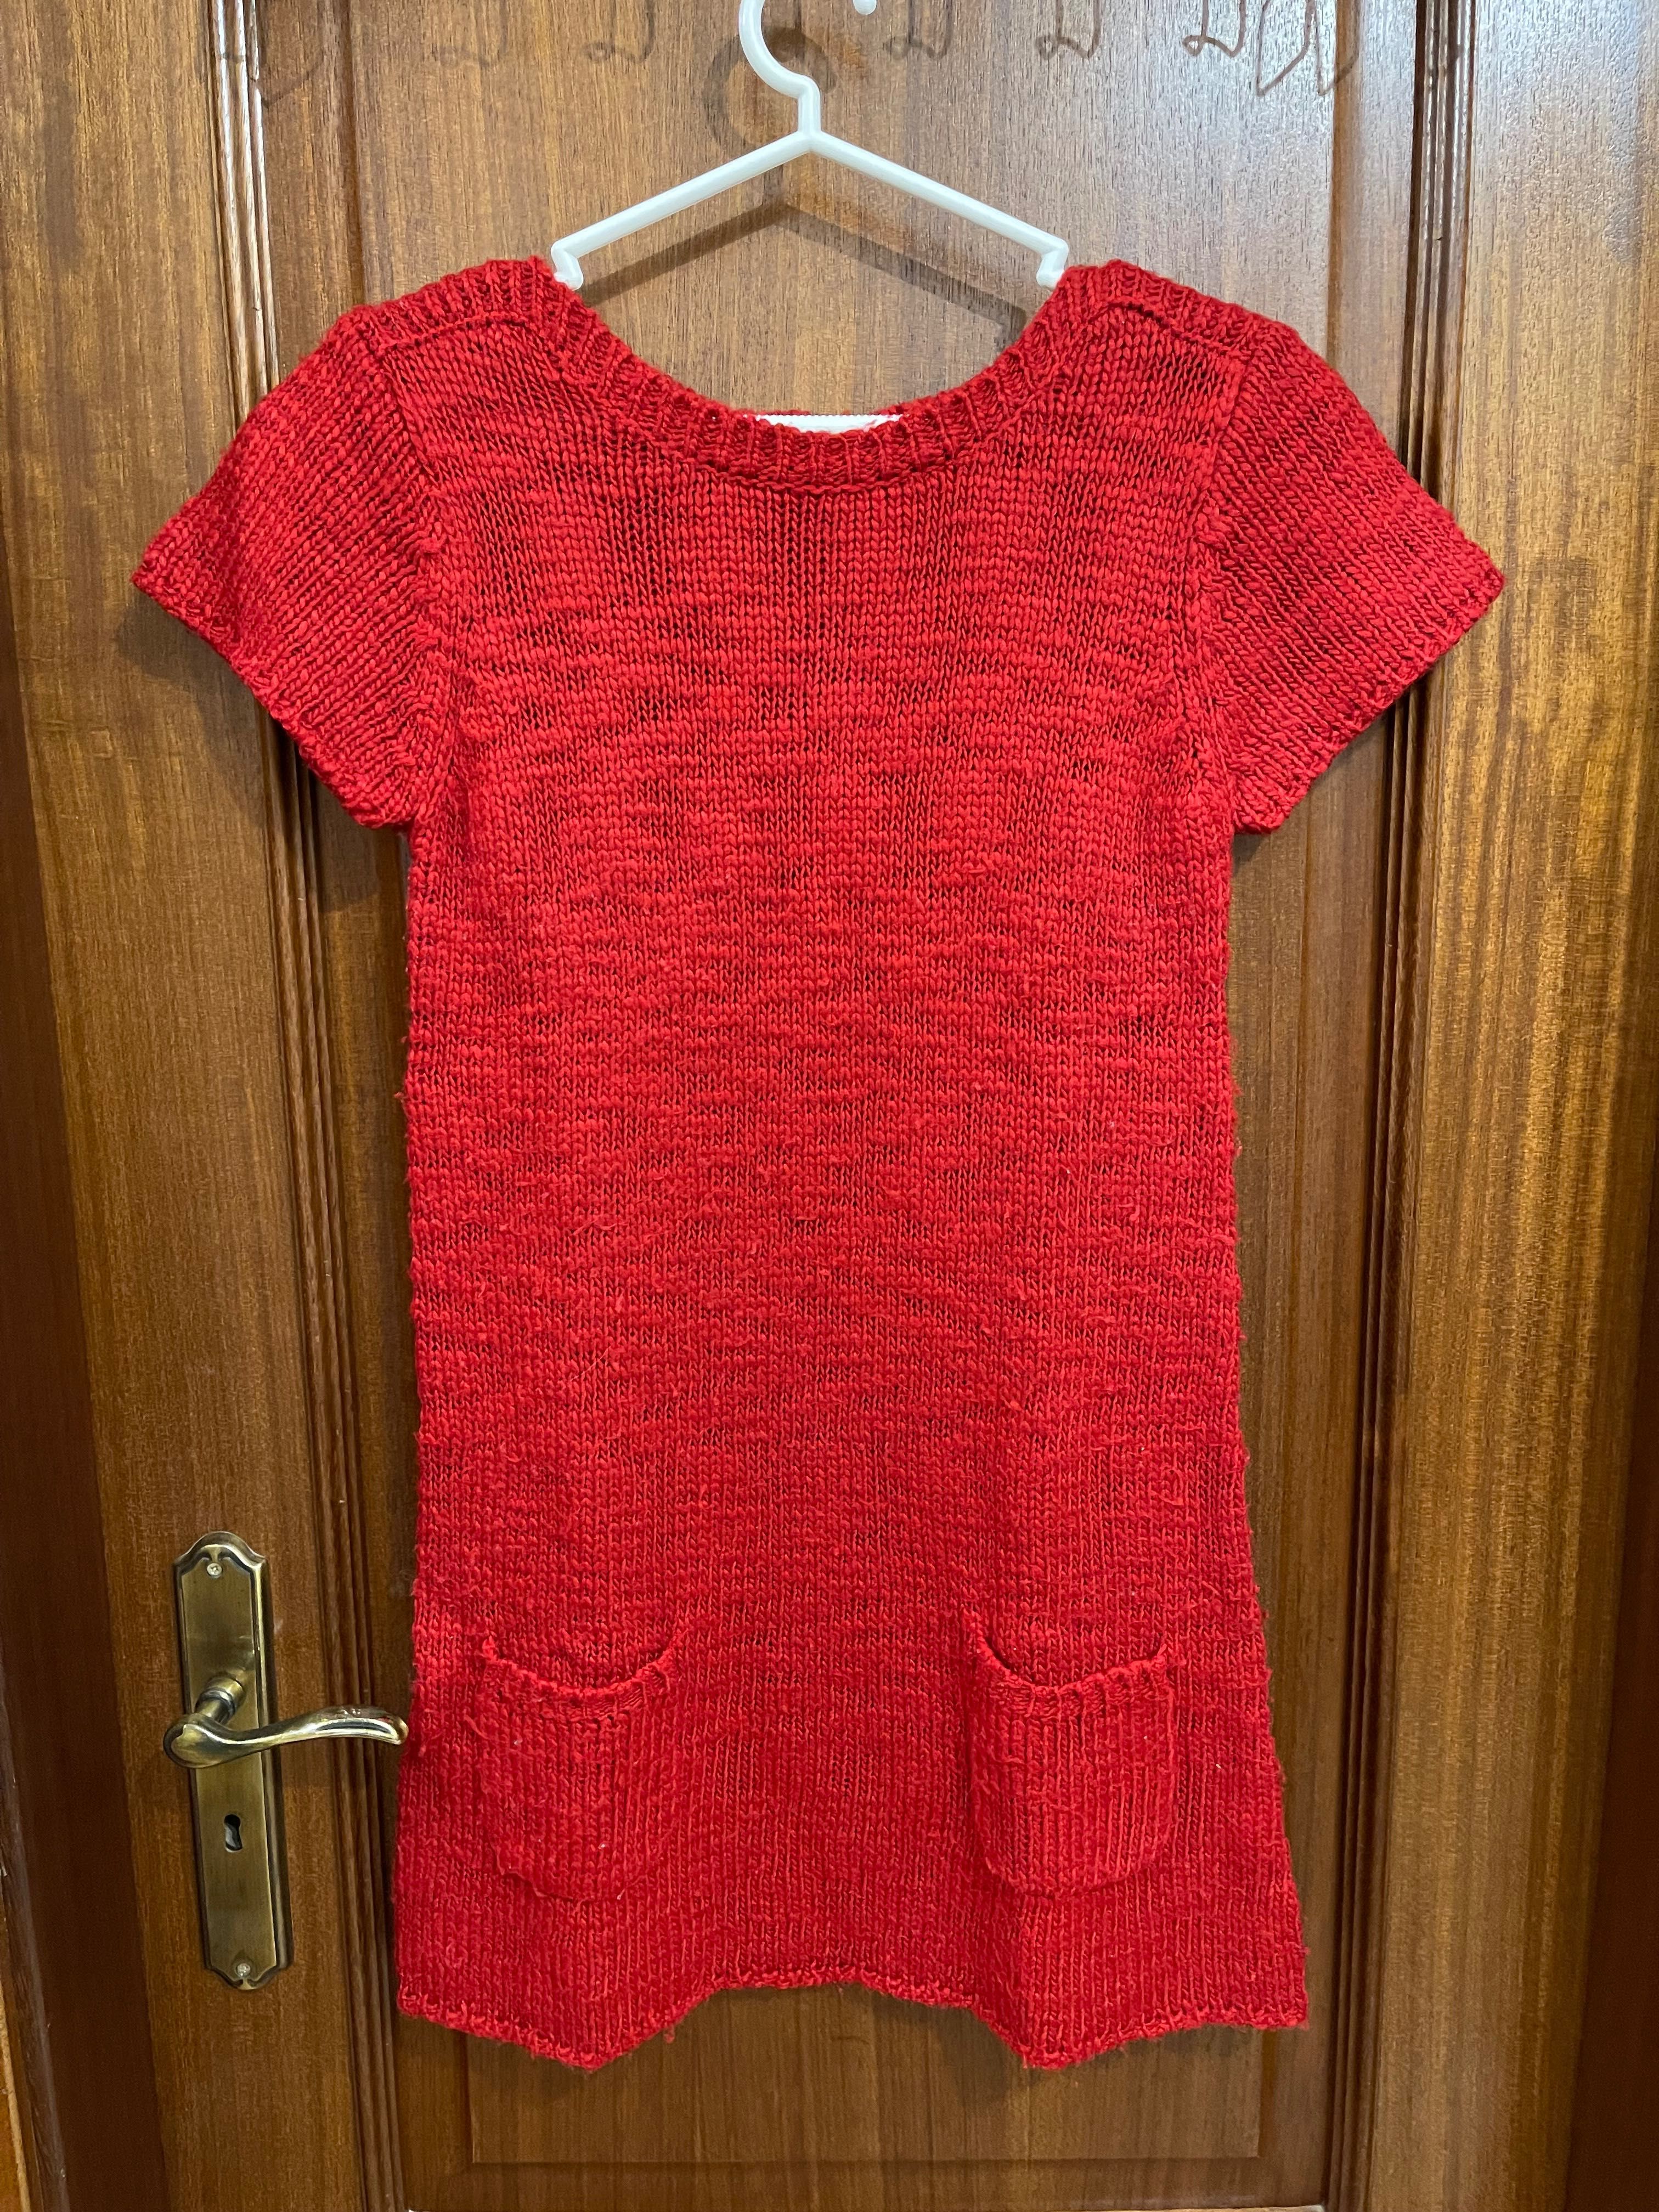 Camisola comprida/vestido de malha vermelha de manga curta